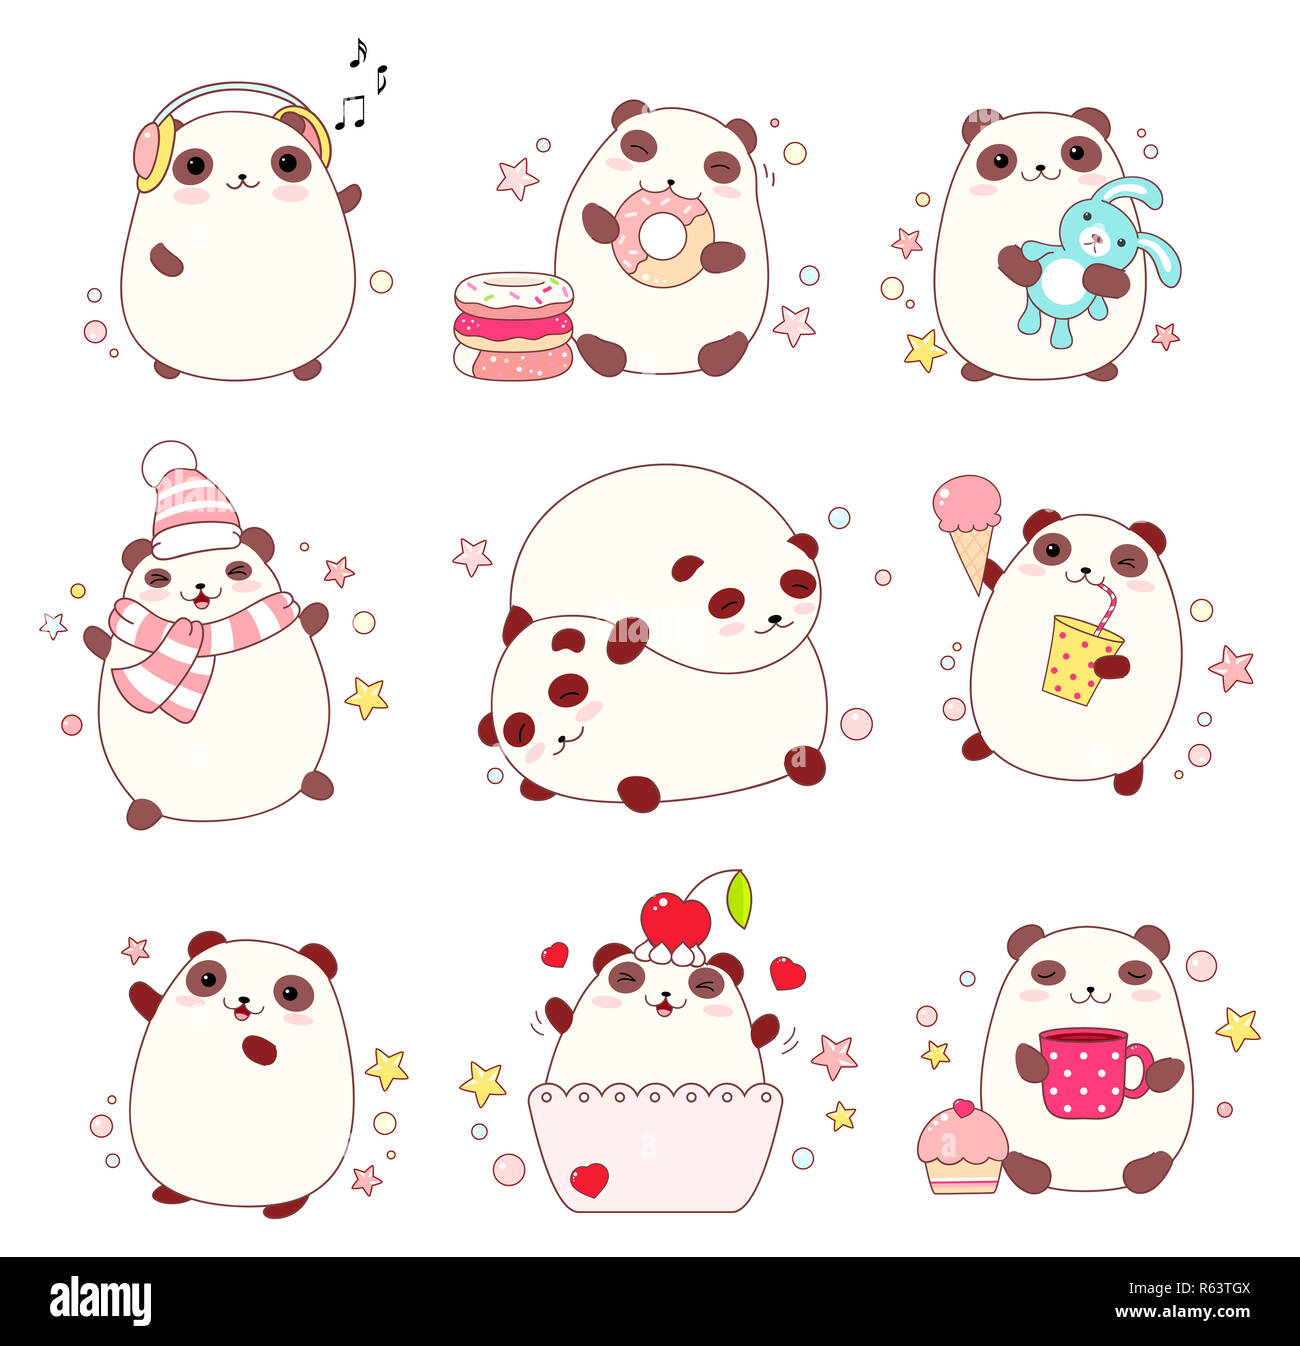 Collection d'adorables pandas dans différentes situations (dormir, manger, marche à pied) en style kawaii. Spe8 Banque D'Images